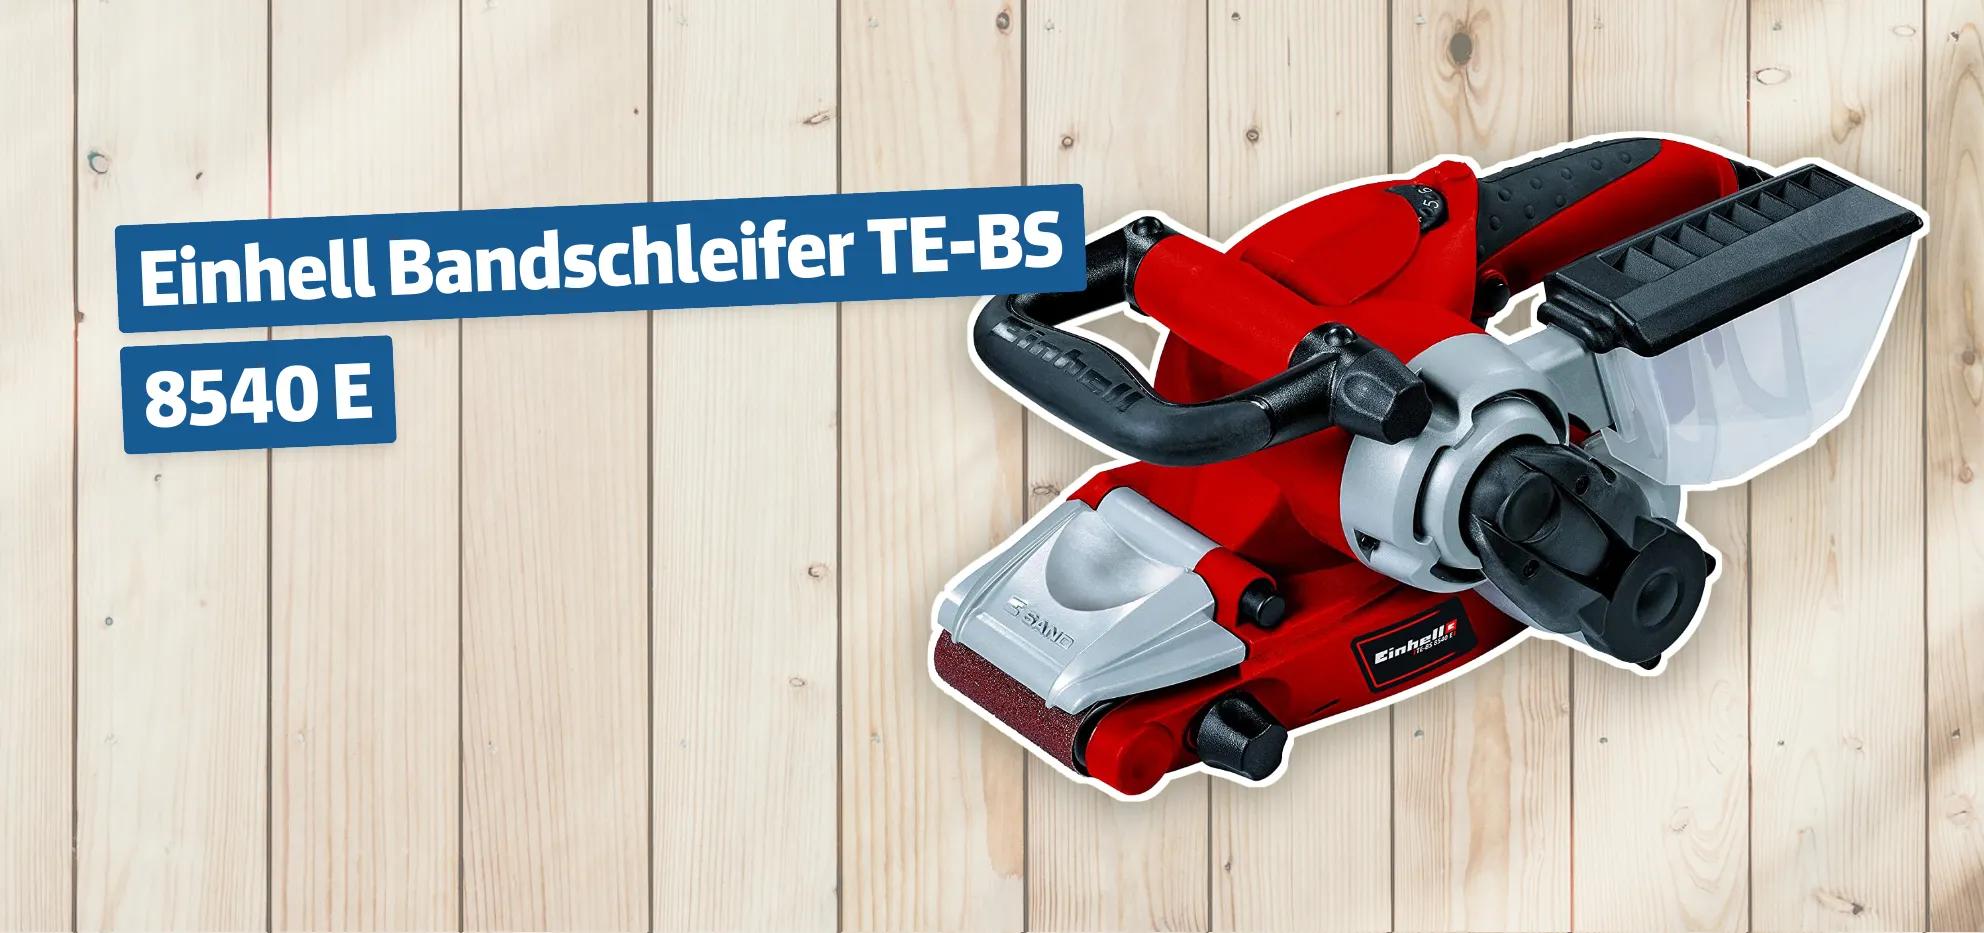 Einhell Bandschleifer TE-BS 8540 E